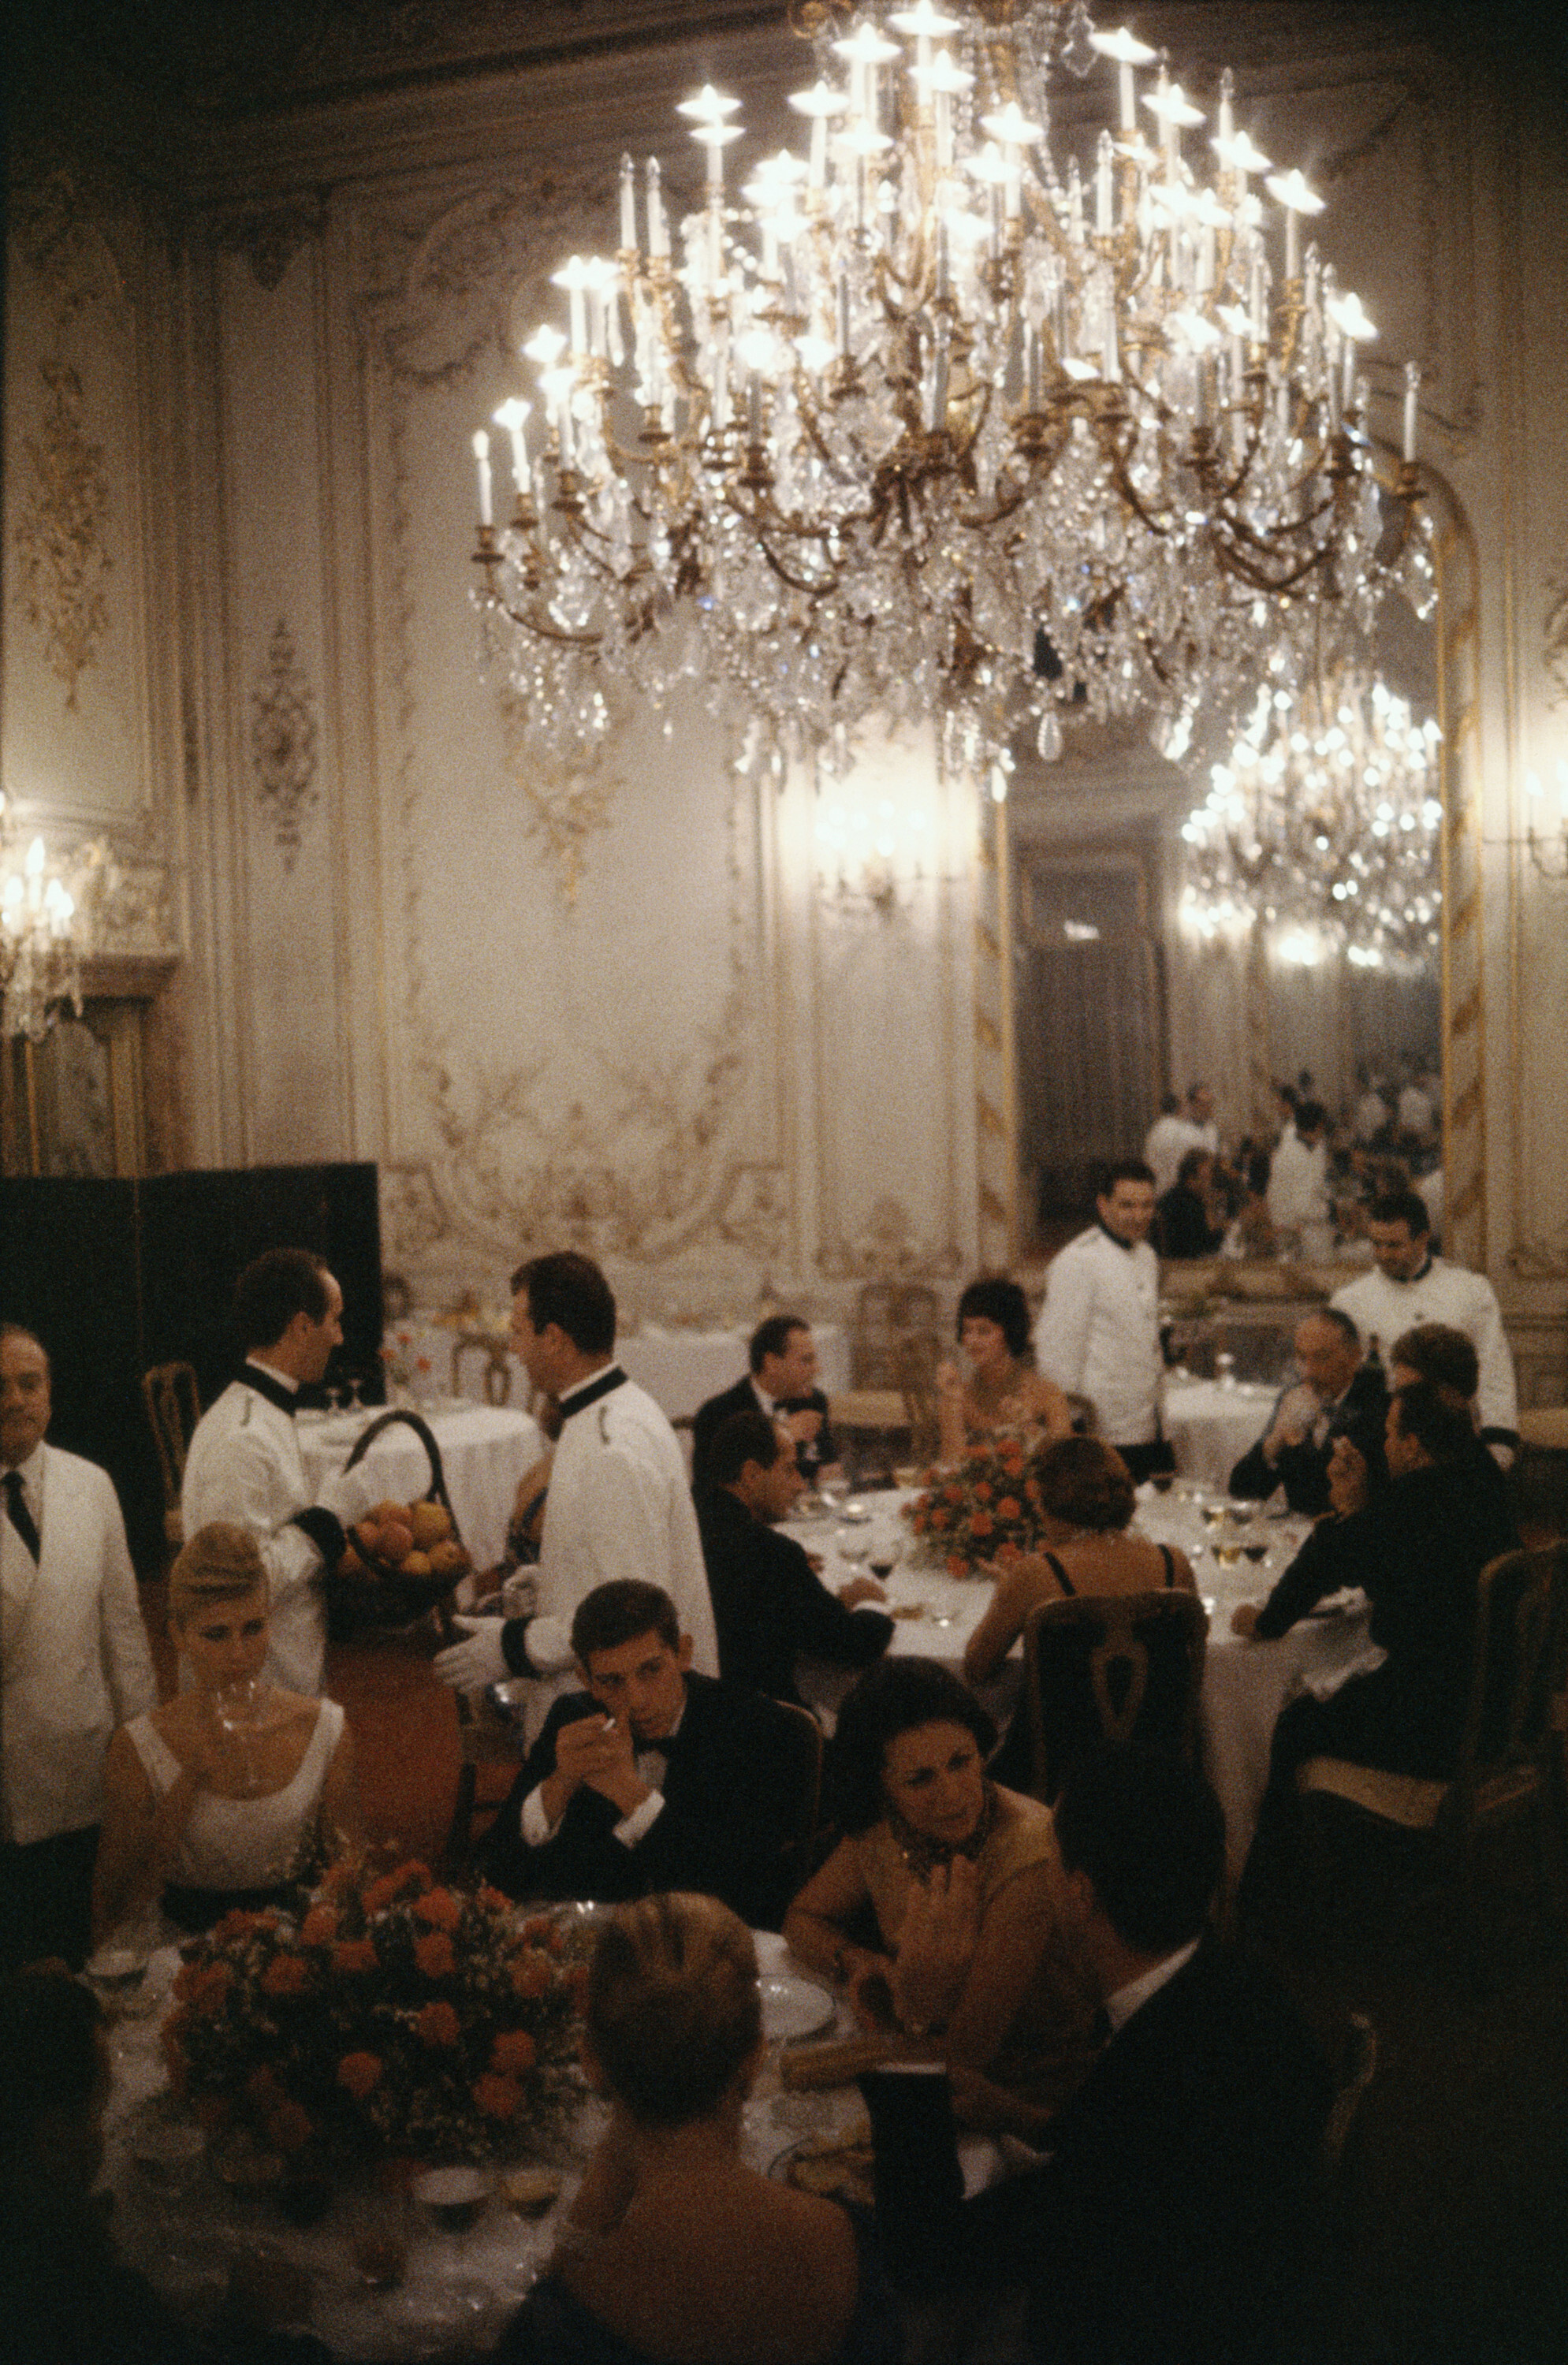 Римский ресторан, ок. 1970 г. Фотограф Слим Ааронс